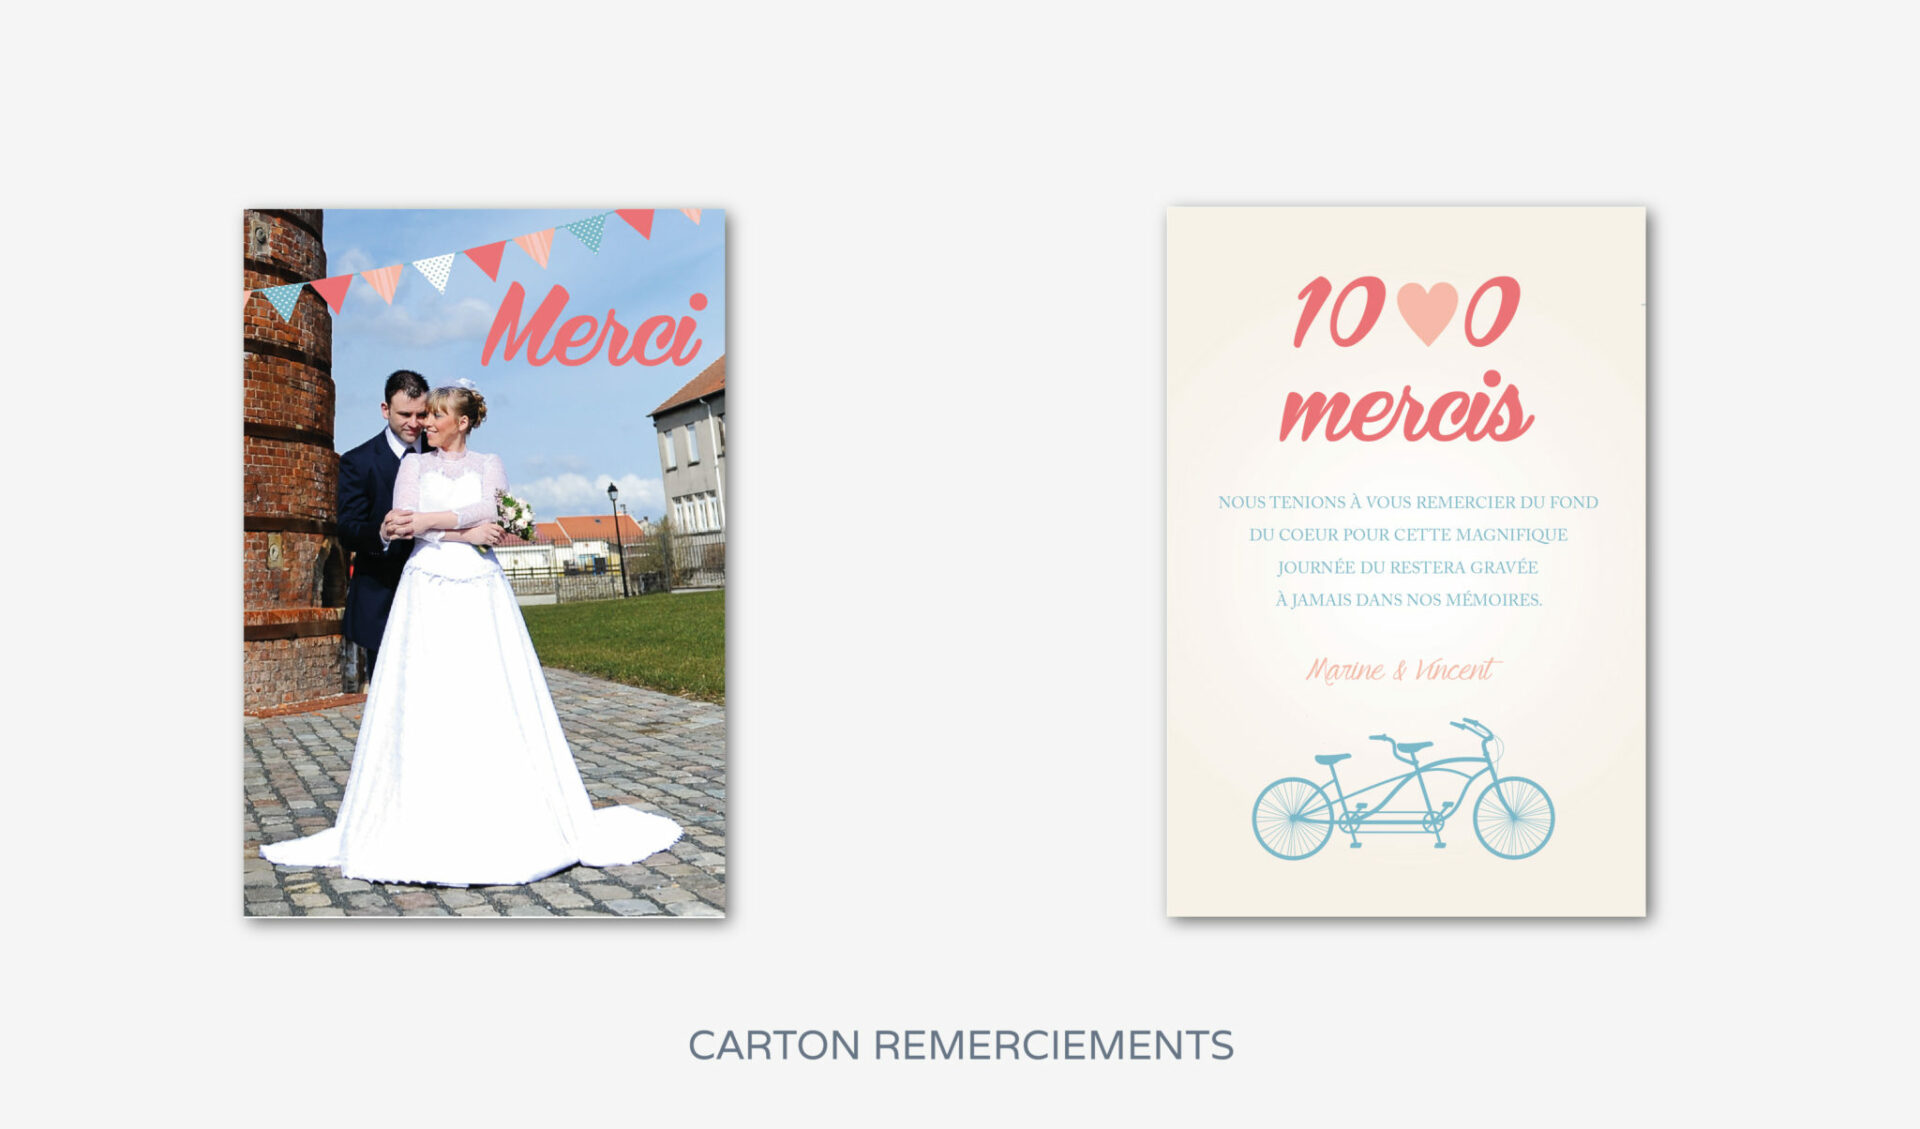 carton-remerciements-mariage-guinguette-vintage